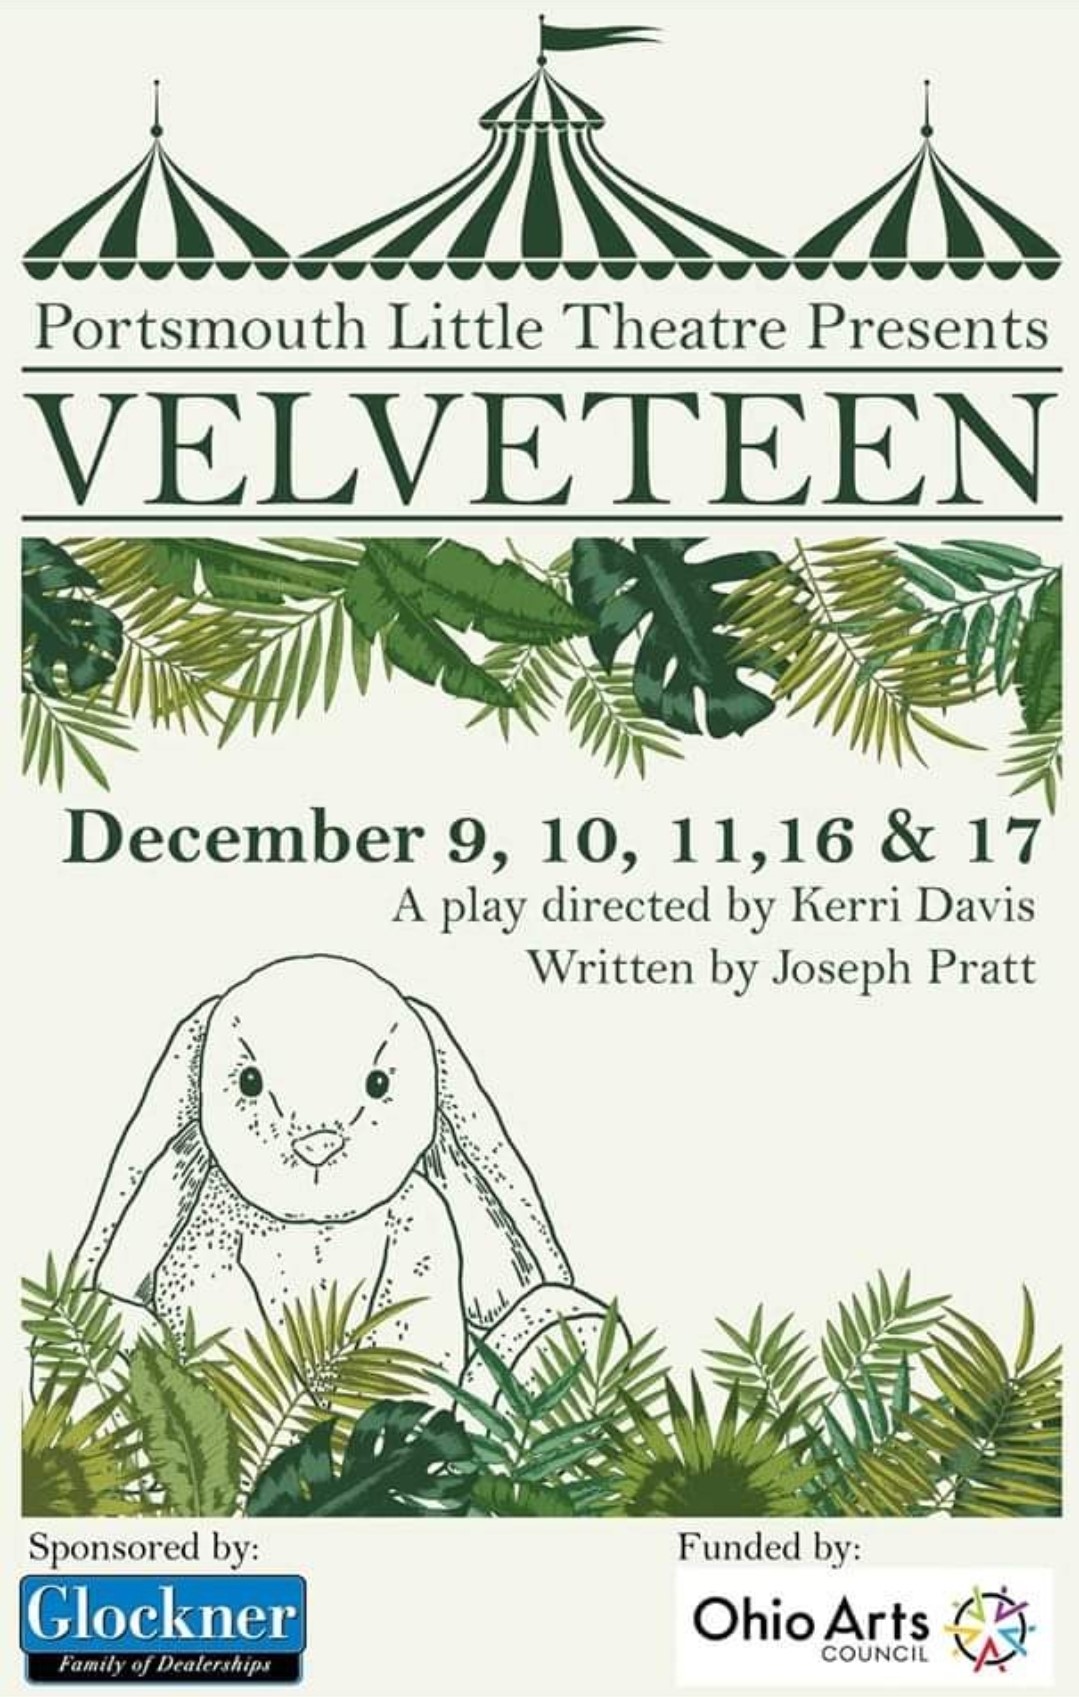 Velveteen  on Dec 09, 19:30@Portsmouth Little Theatre - Elegir asientoCompra entradas y obtén información enPortsmouth Little Theatre 